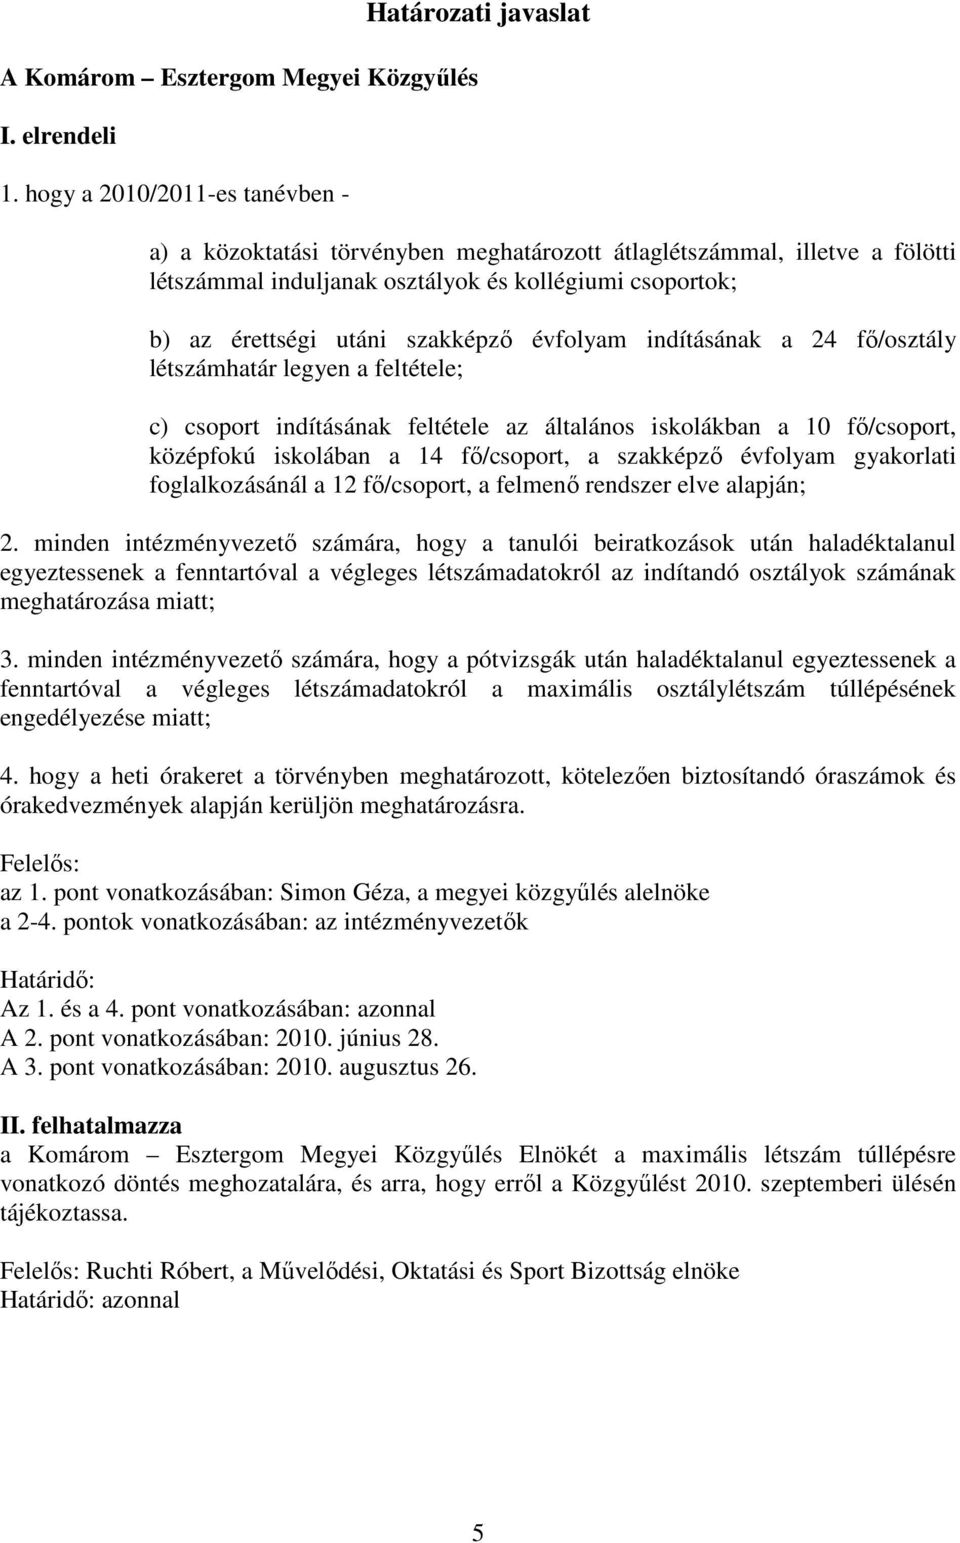 évfolyam indításának a 24 fı/osztály létszámhatár legyen a feltétele; c) csoport indításának feltétele az általános iskolákban a 10 fı/csoport, középfokú iskolában a 14 fı/csoport, a szakképzı